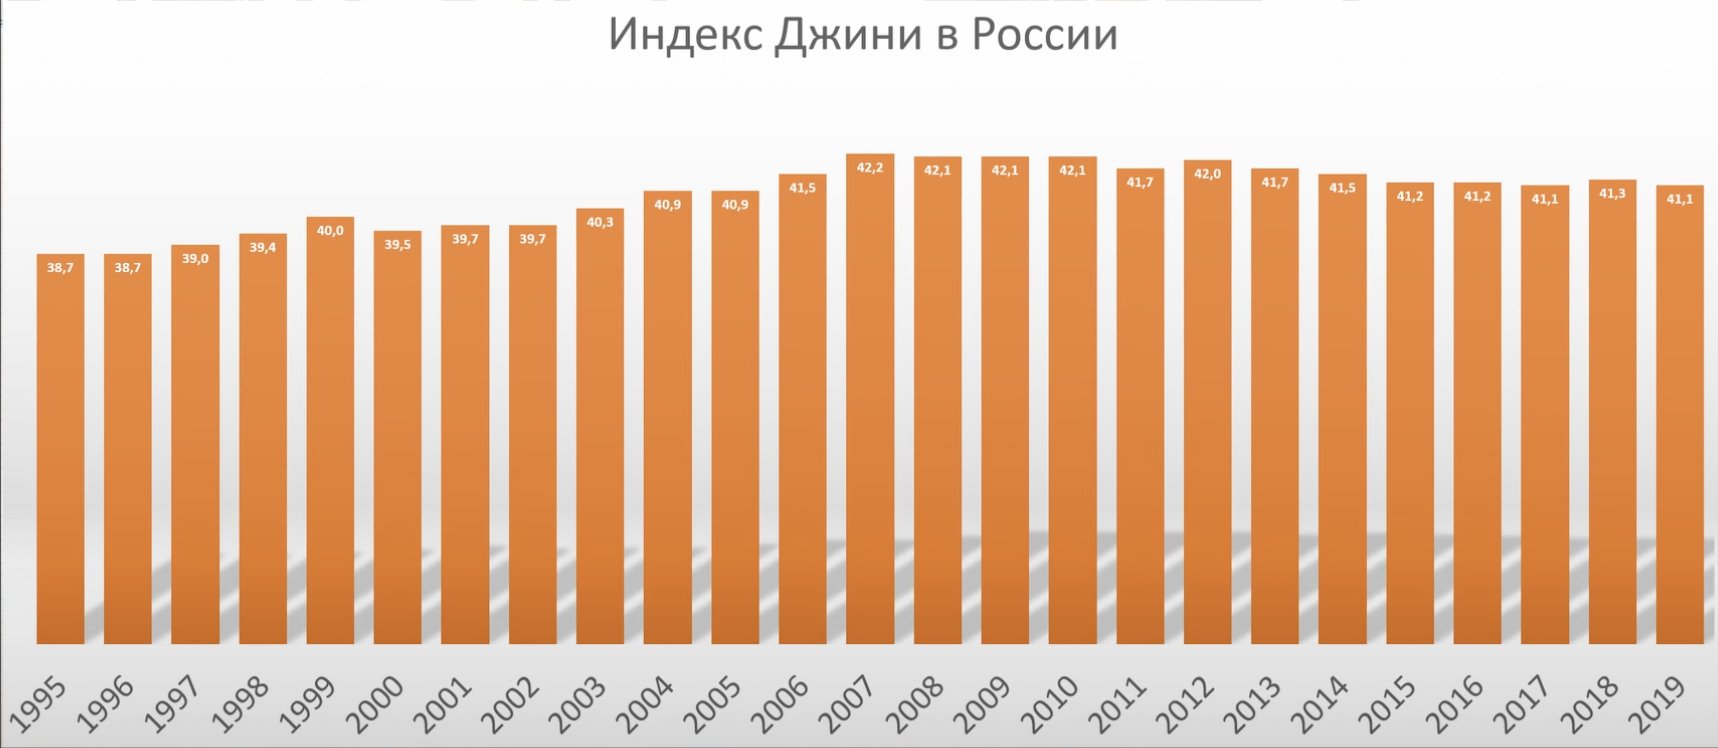 Индекс Джини России